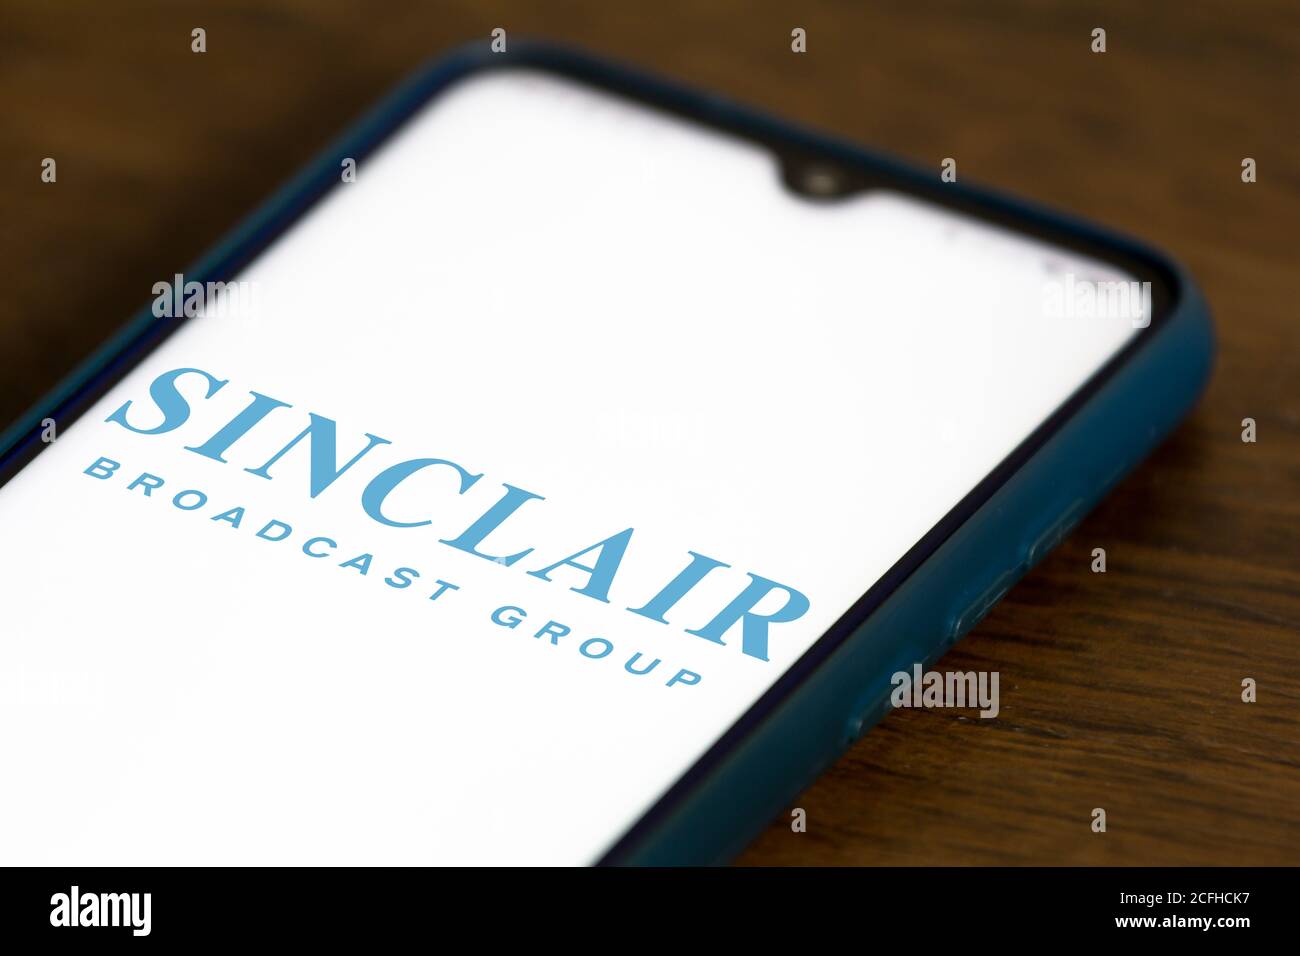 In dieser Abbildung ist das Logo der Sinclair Broadcast Group zu sehen Auf einem Smartphone angezeigt Stockfoto